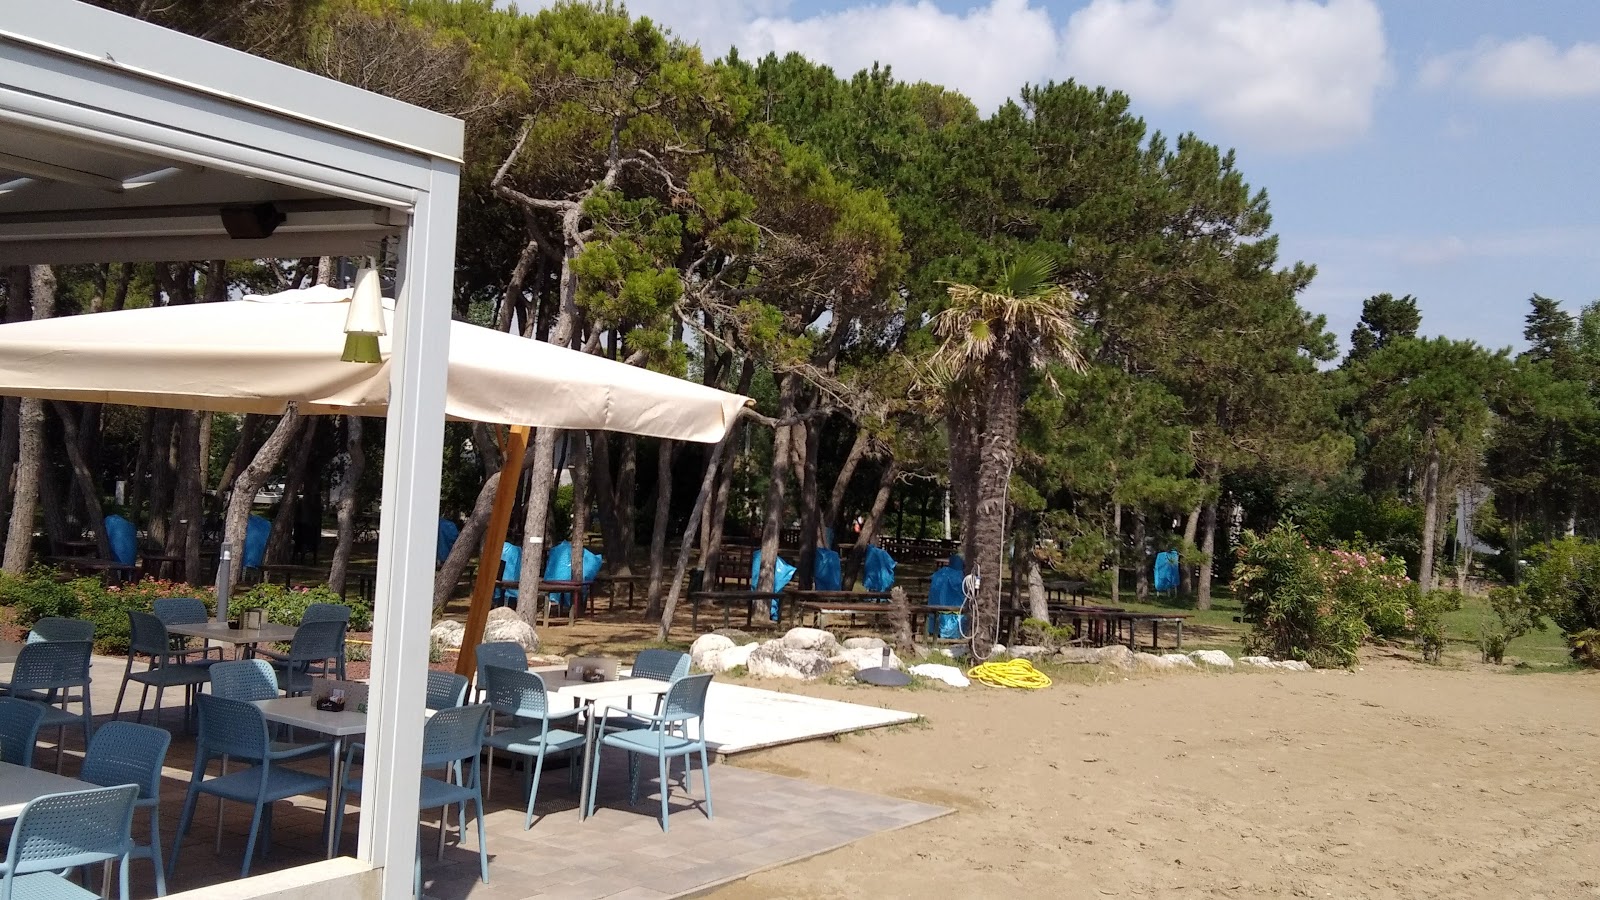 Photo de Spiaggia Libera Caorle - endroit populaire parmi les connaisseurs de la détente